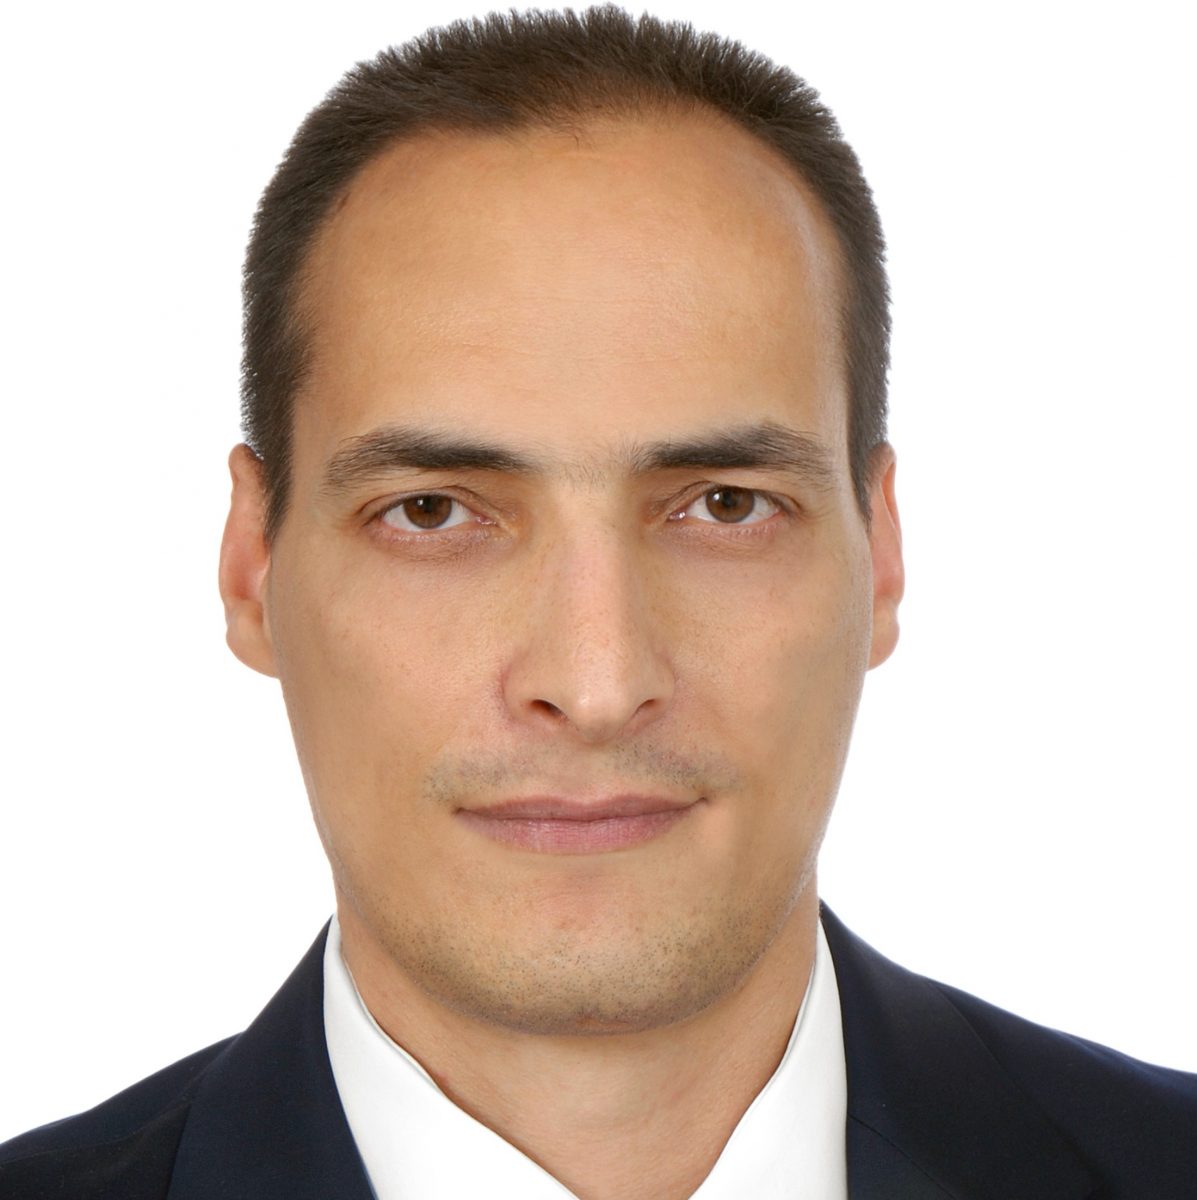 Χάρης Αποστολόπουλος, PhD